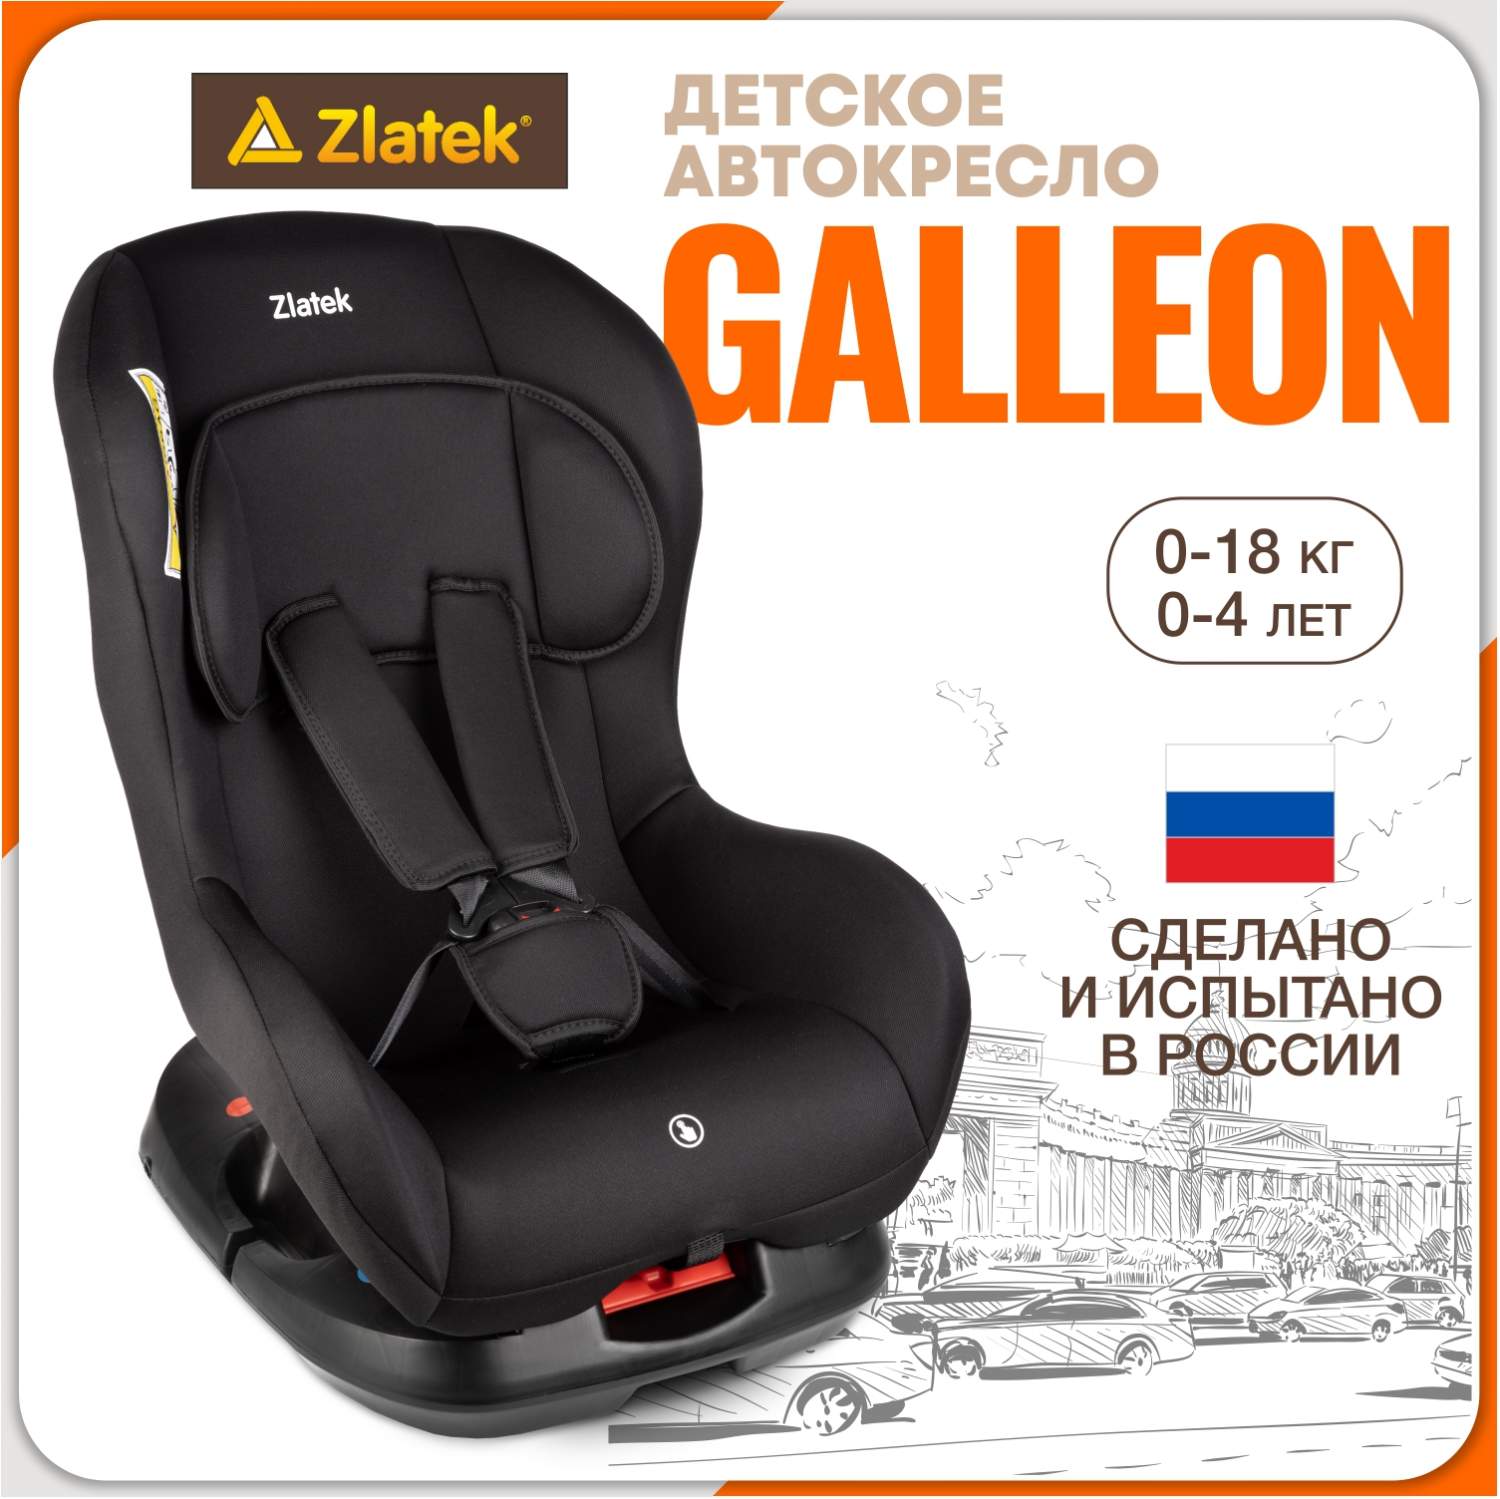 Купить автокресло детское Zlatek Galleon от 0 до 18 кг, черное, цены наМегамаркет